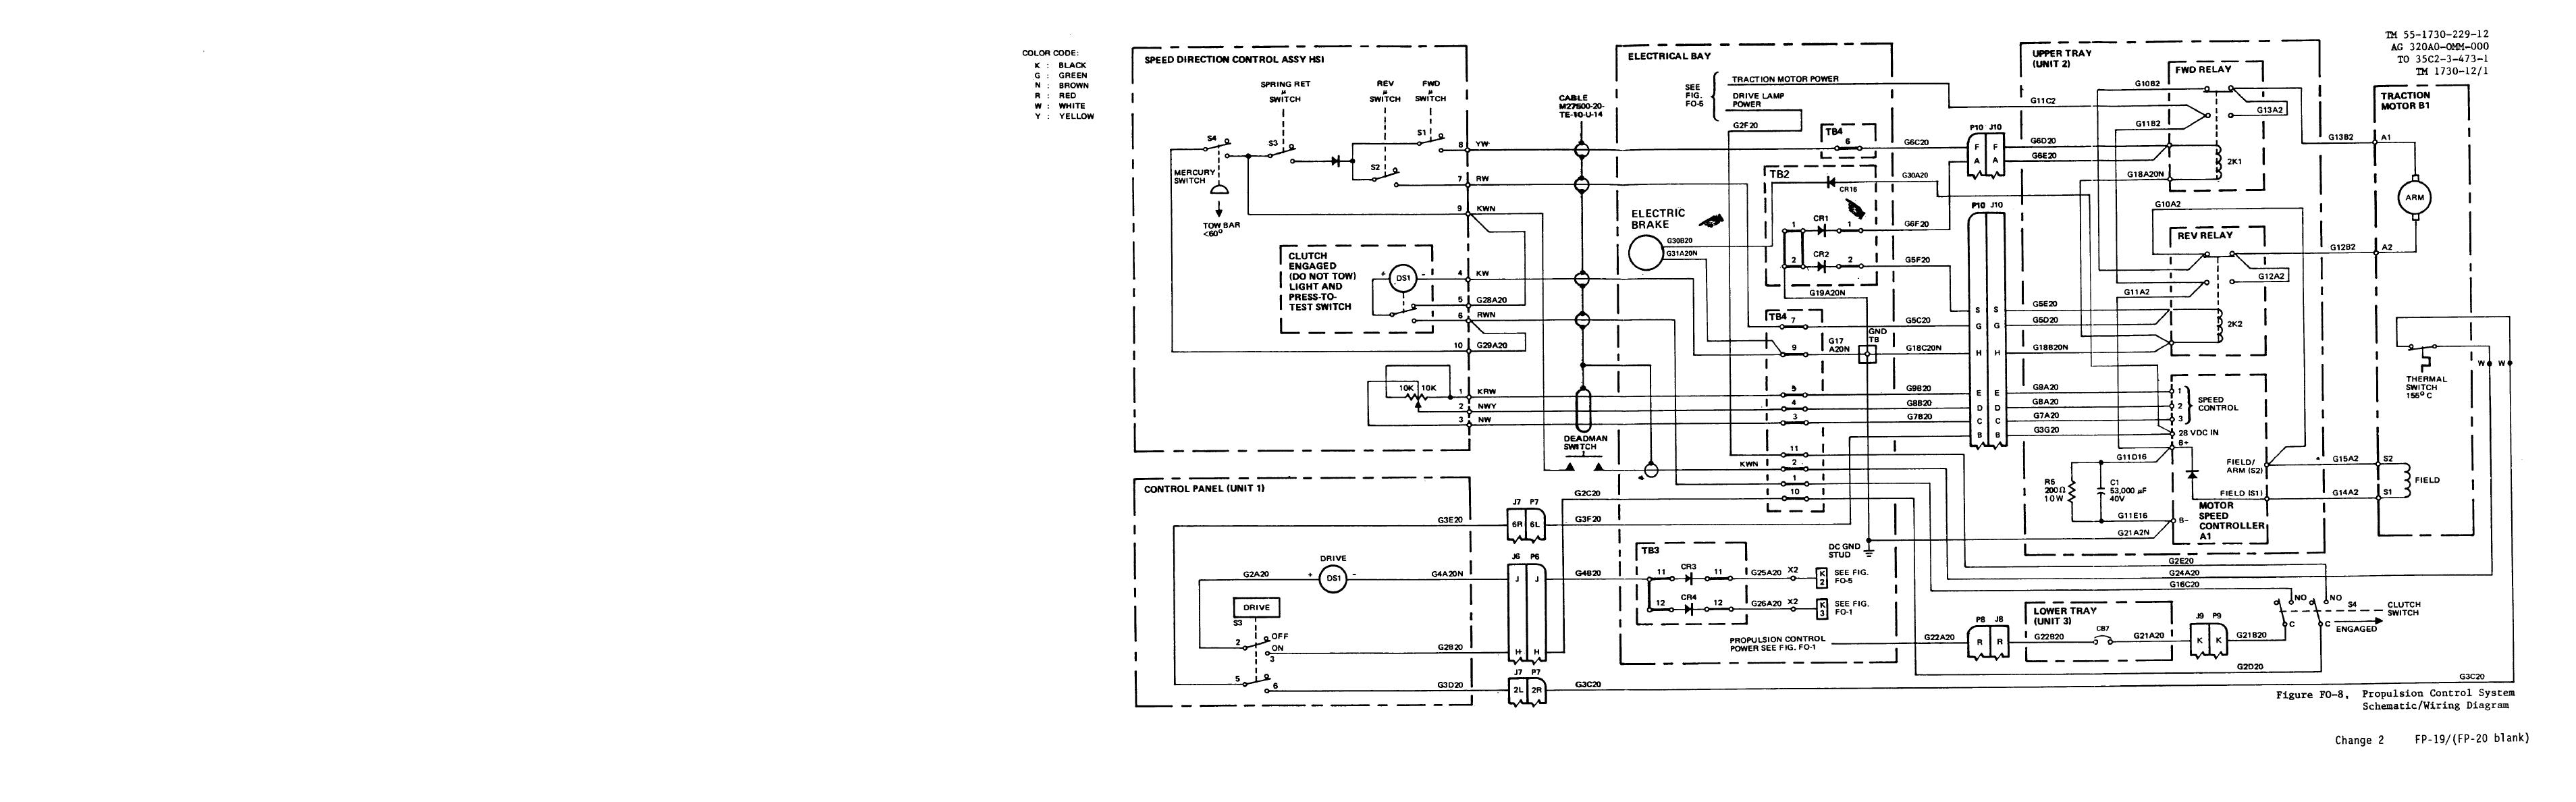 Wiring Diagram PDF: 120 Schematic Wiring Diagram